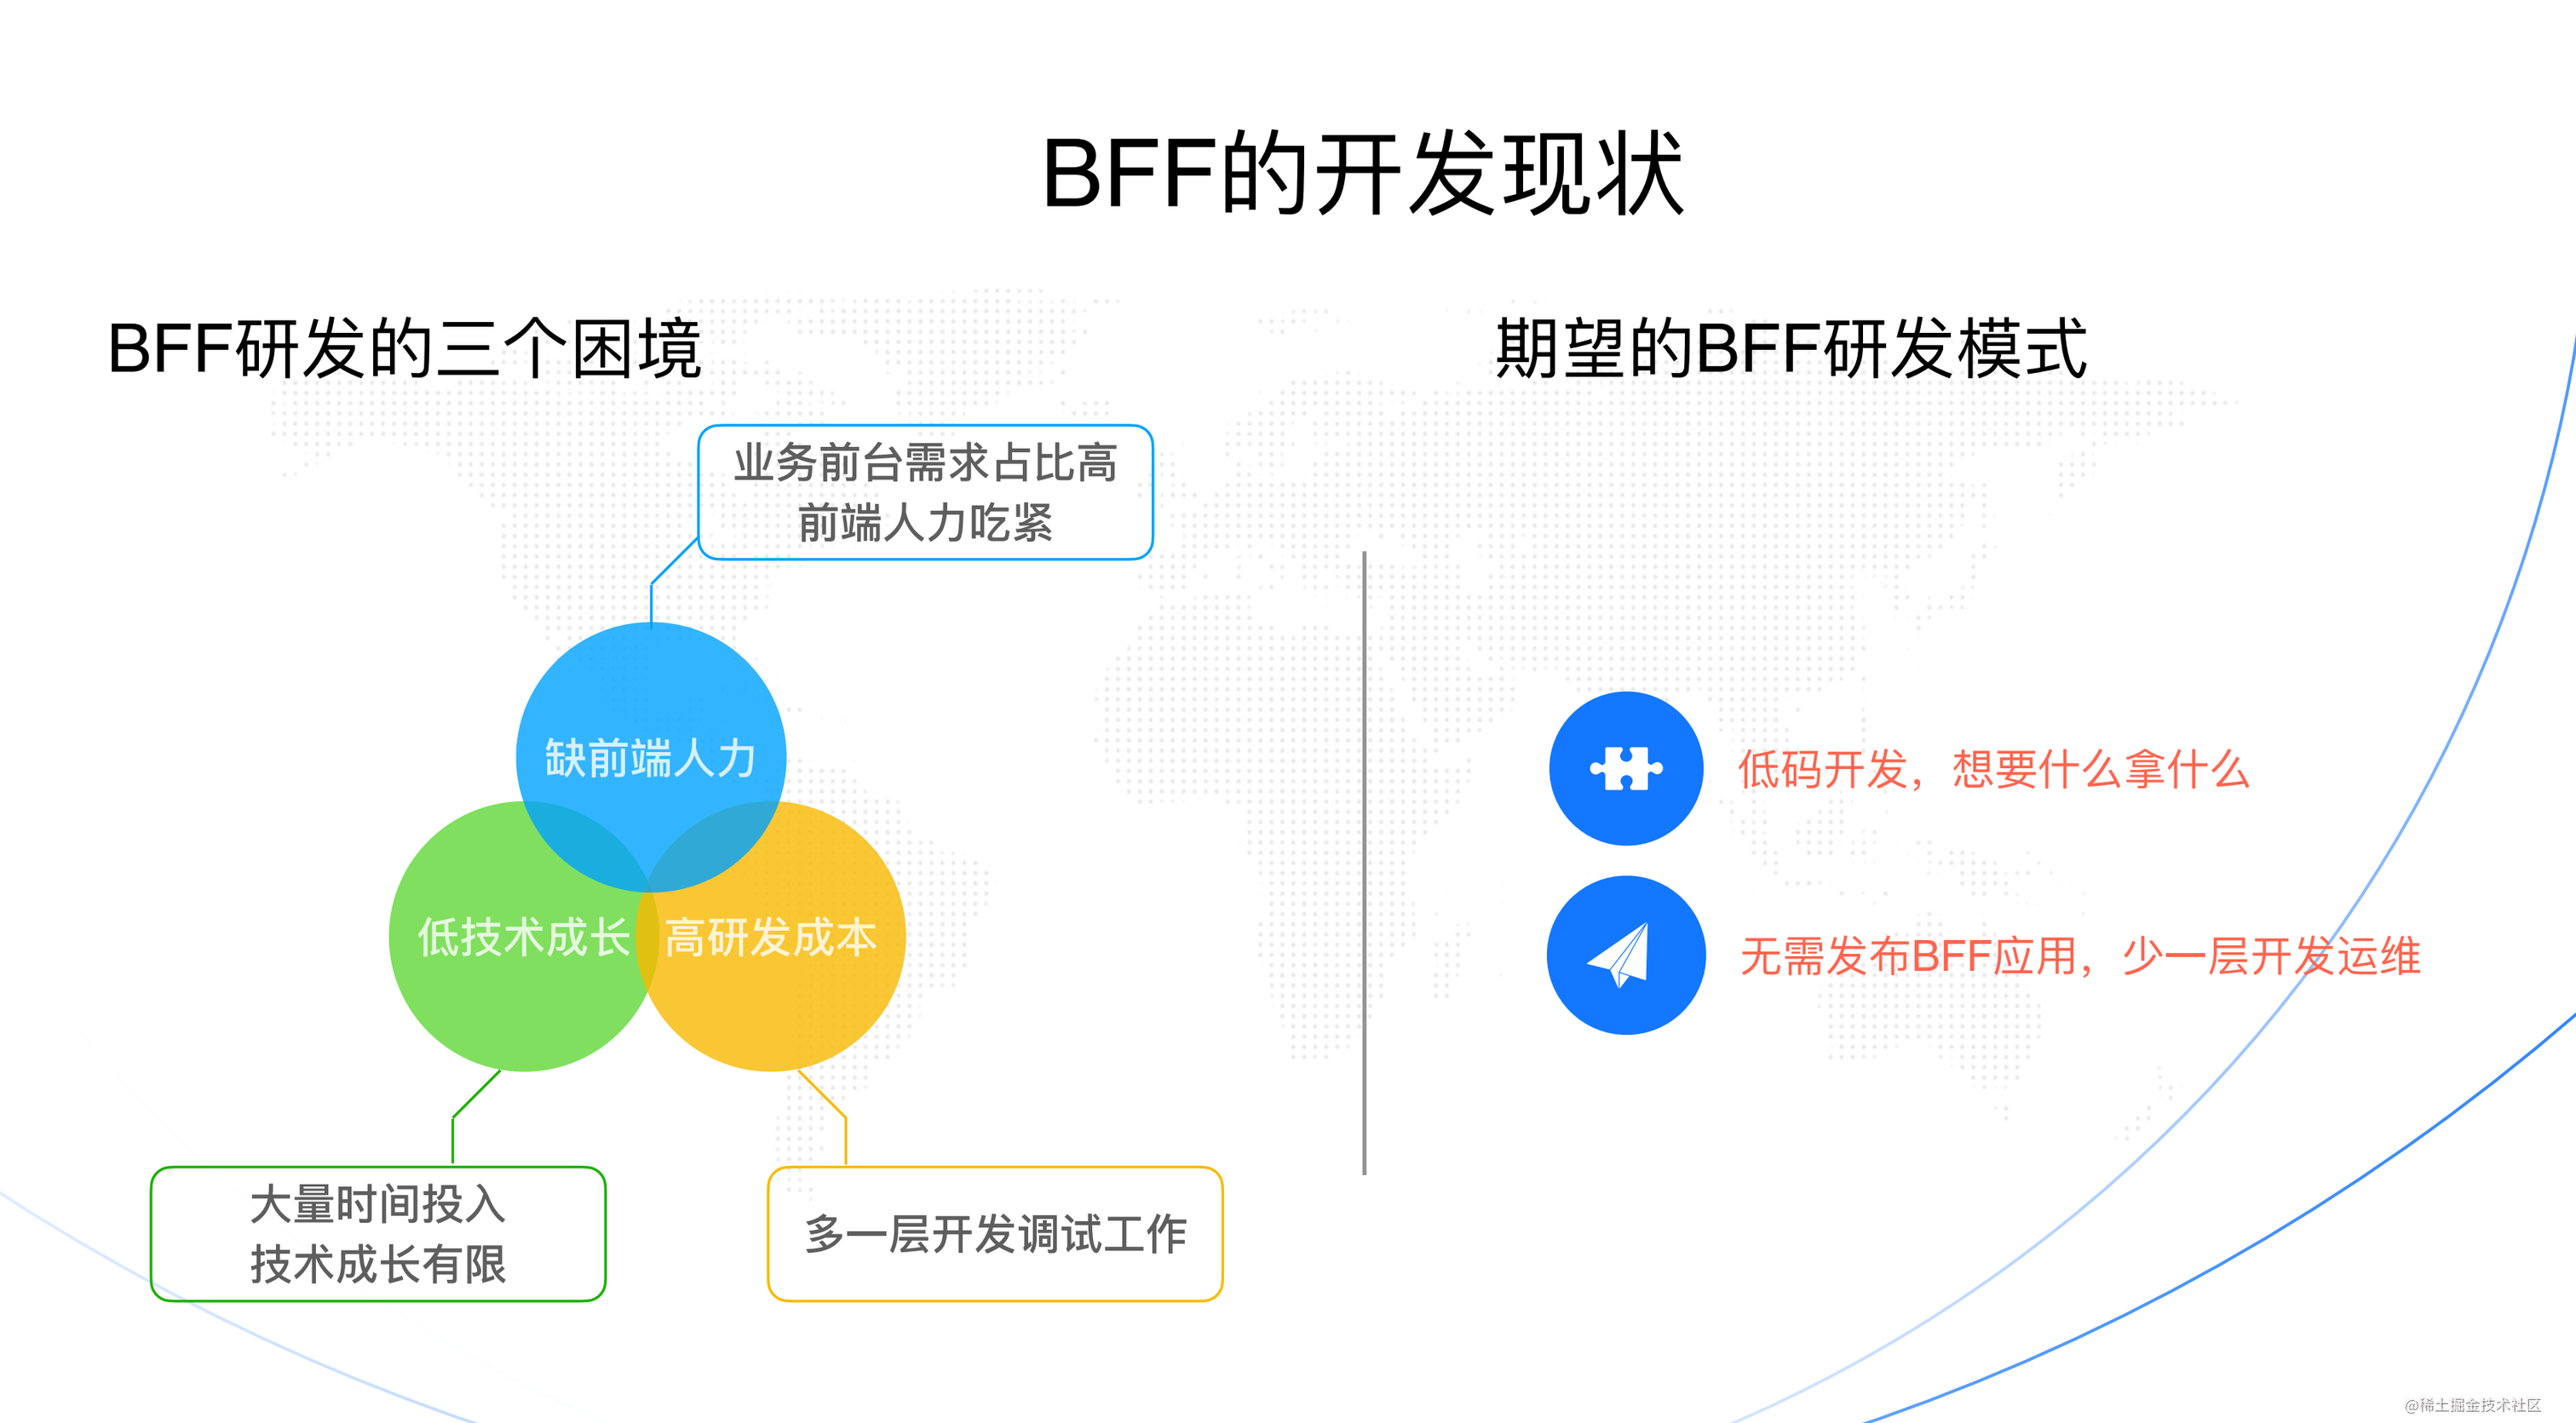 【BFF 连载 1/9】如何在蚂蚁数金中玩转 BFF 低码实践